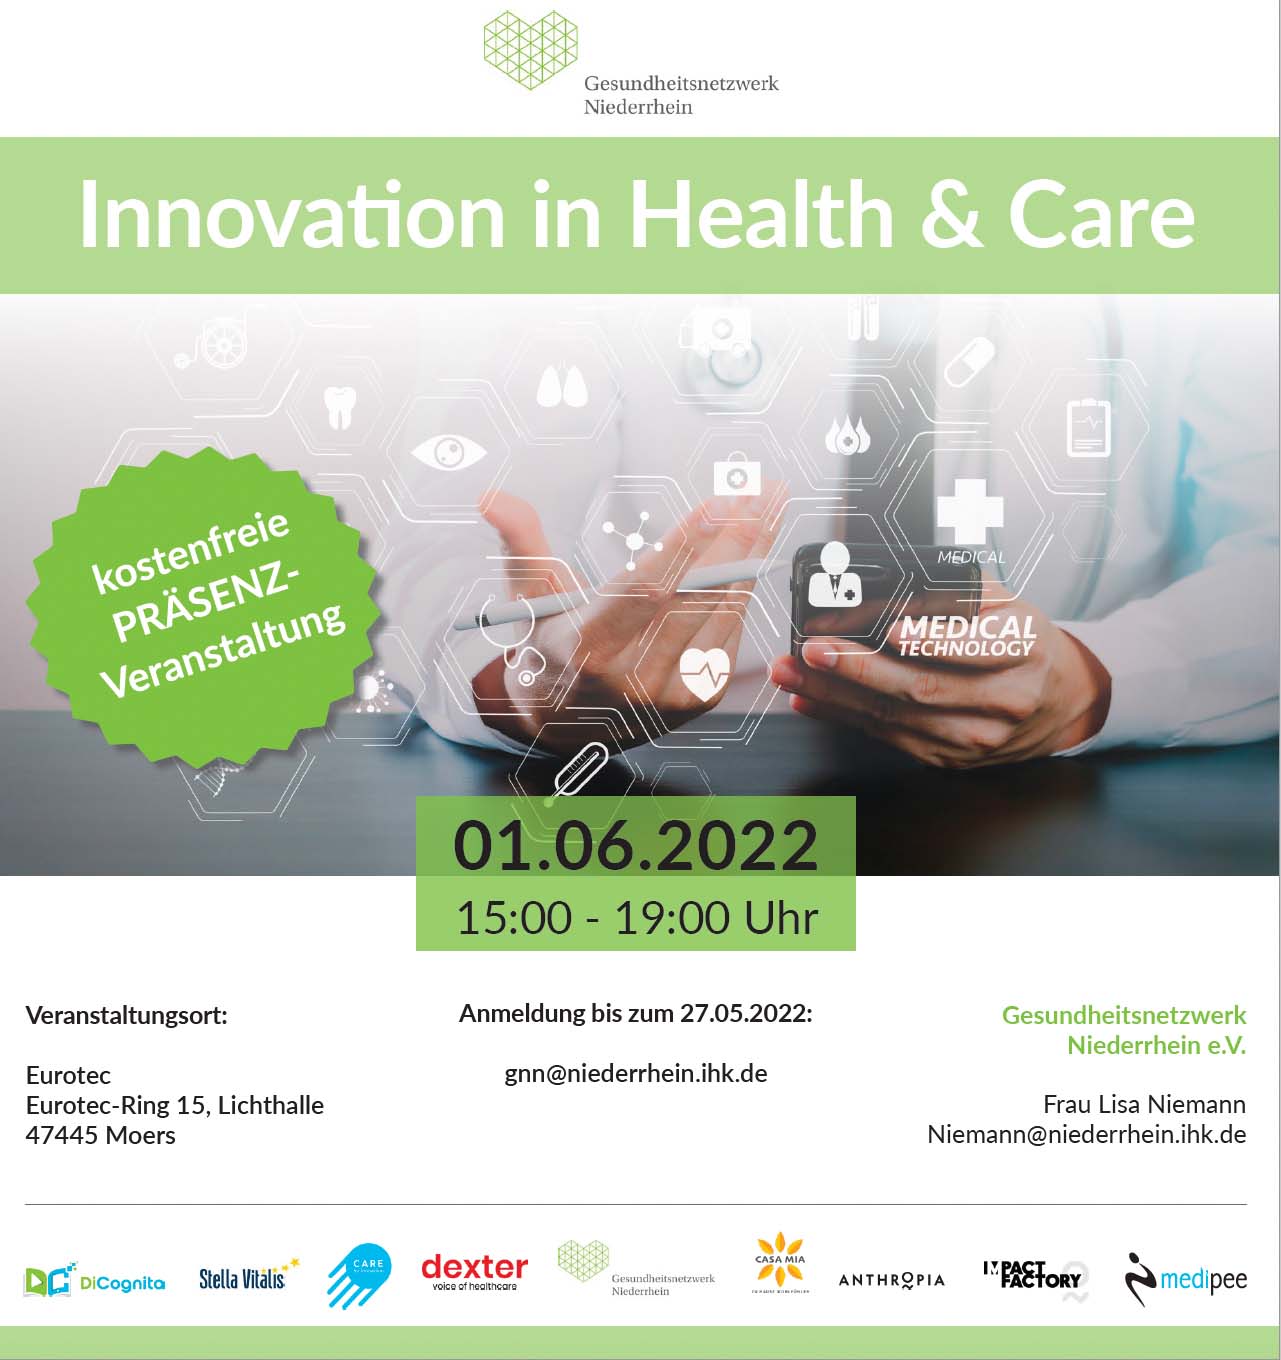 Einladung zur Veranstaltung "Innovation in Health & Care"